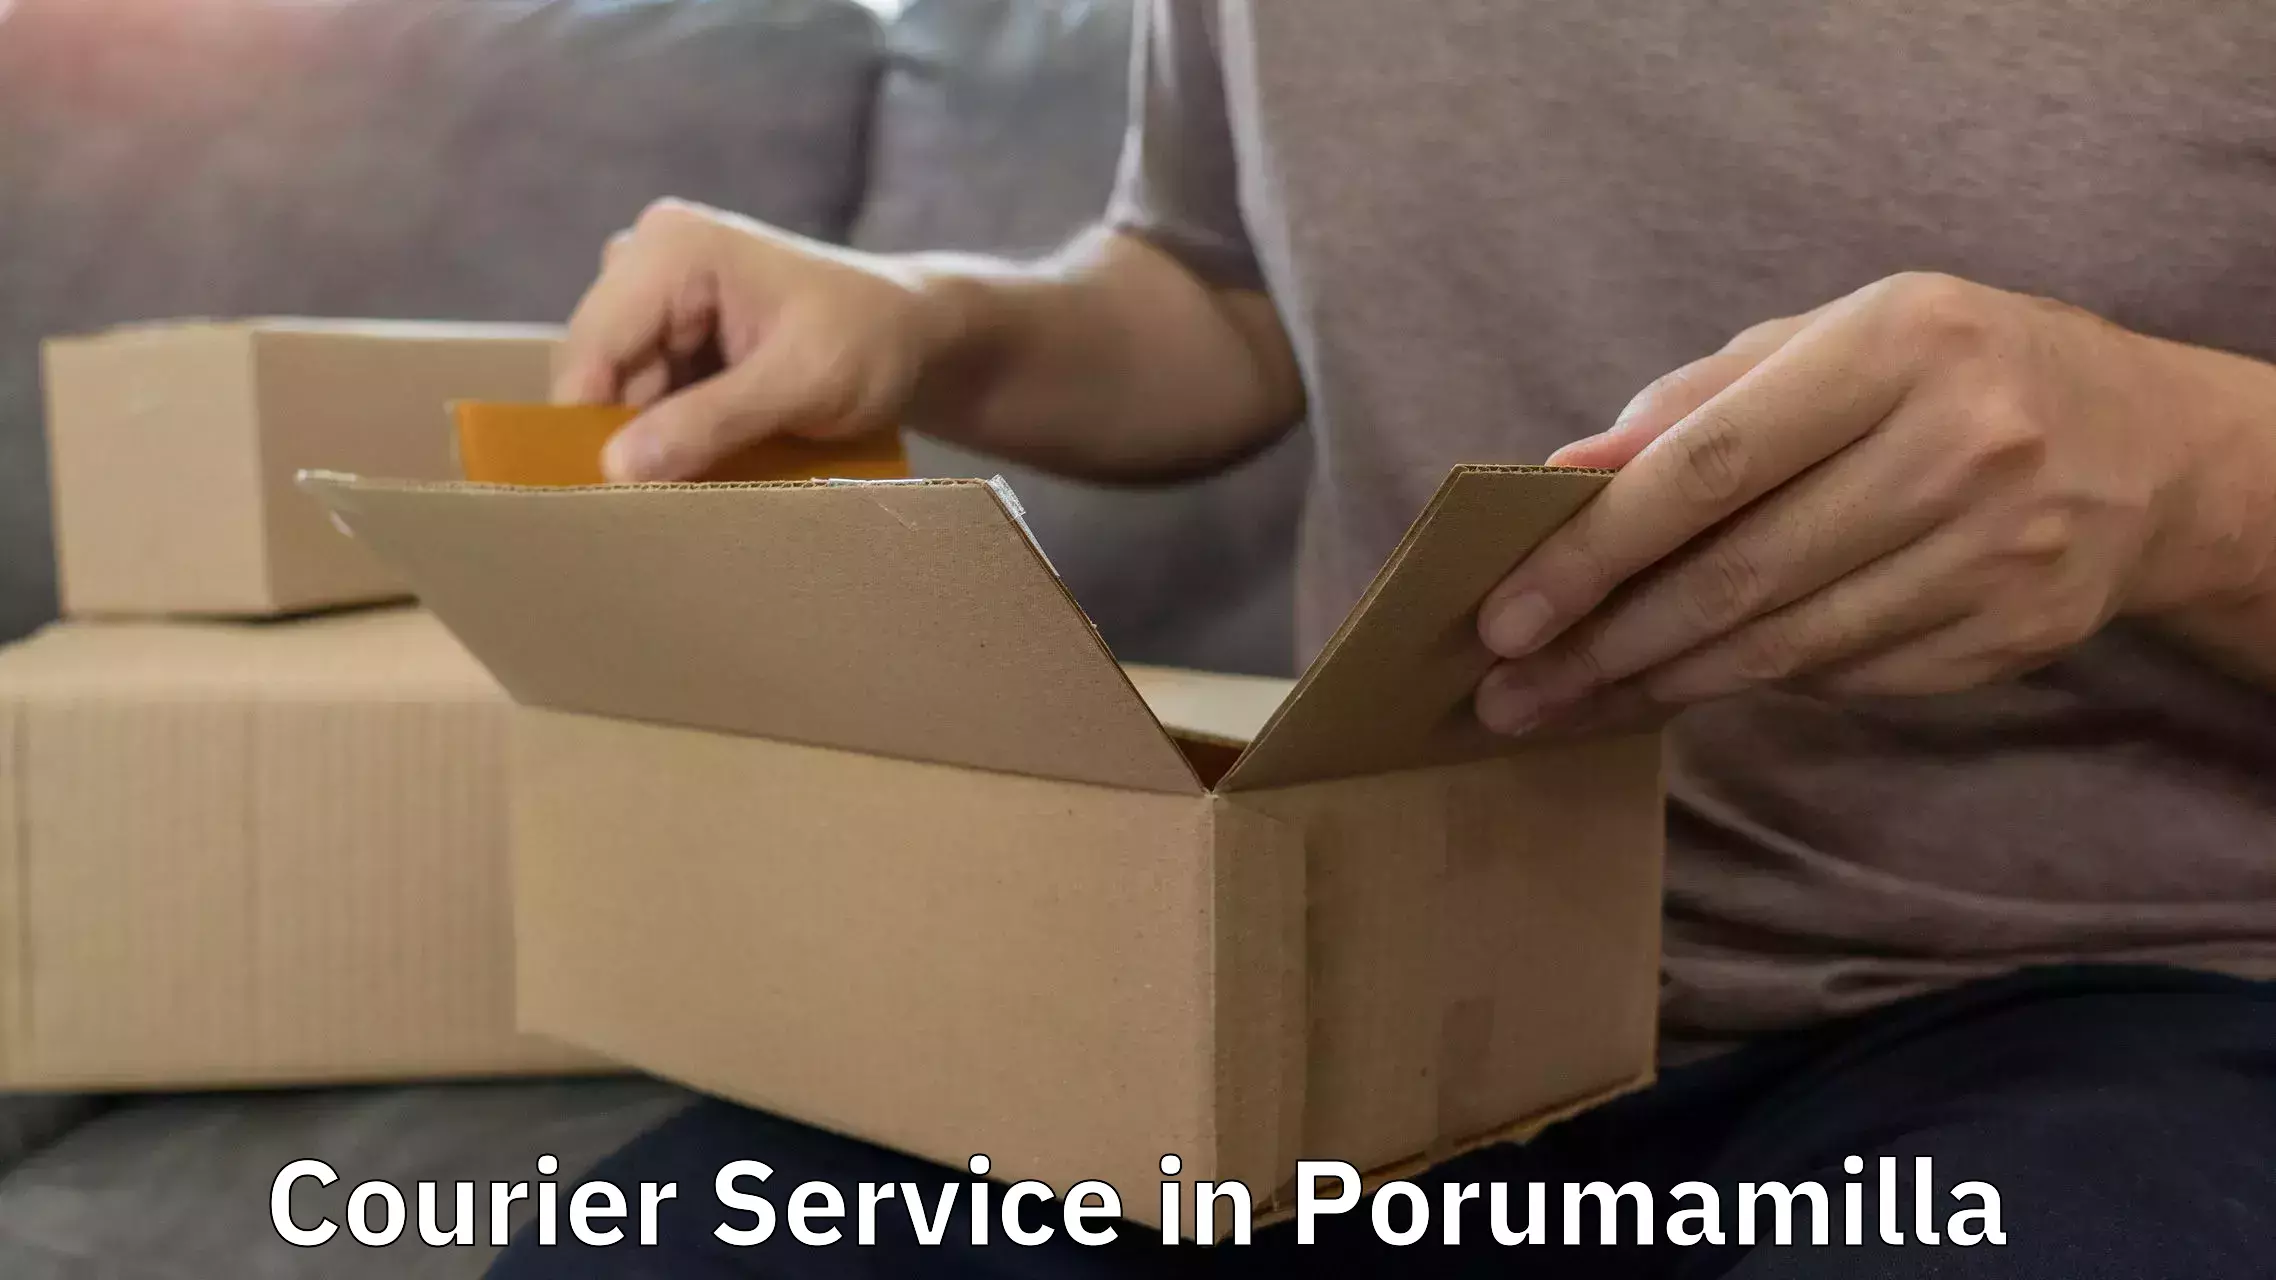 Reliable logistics providers in Porumamilla